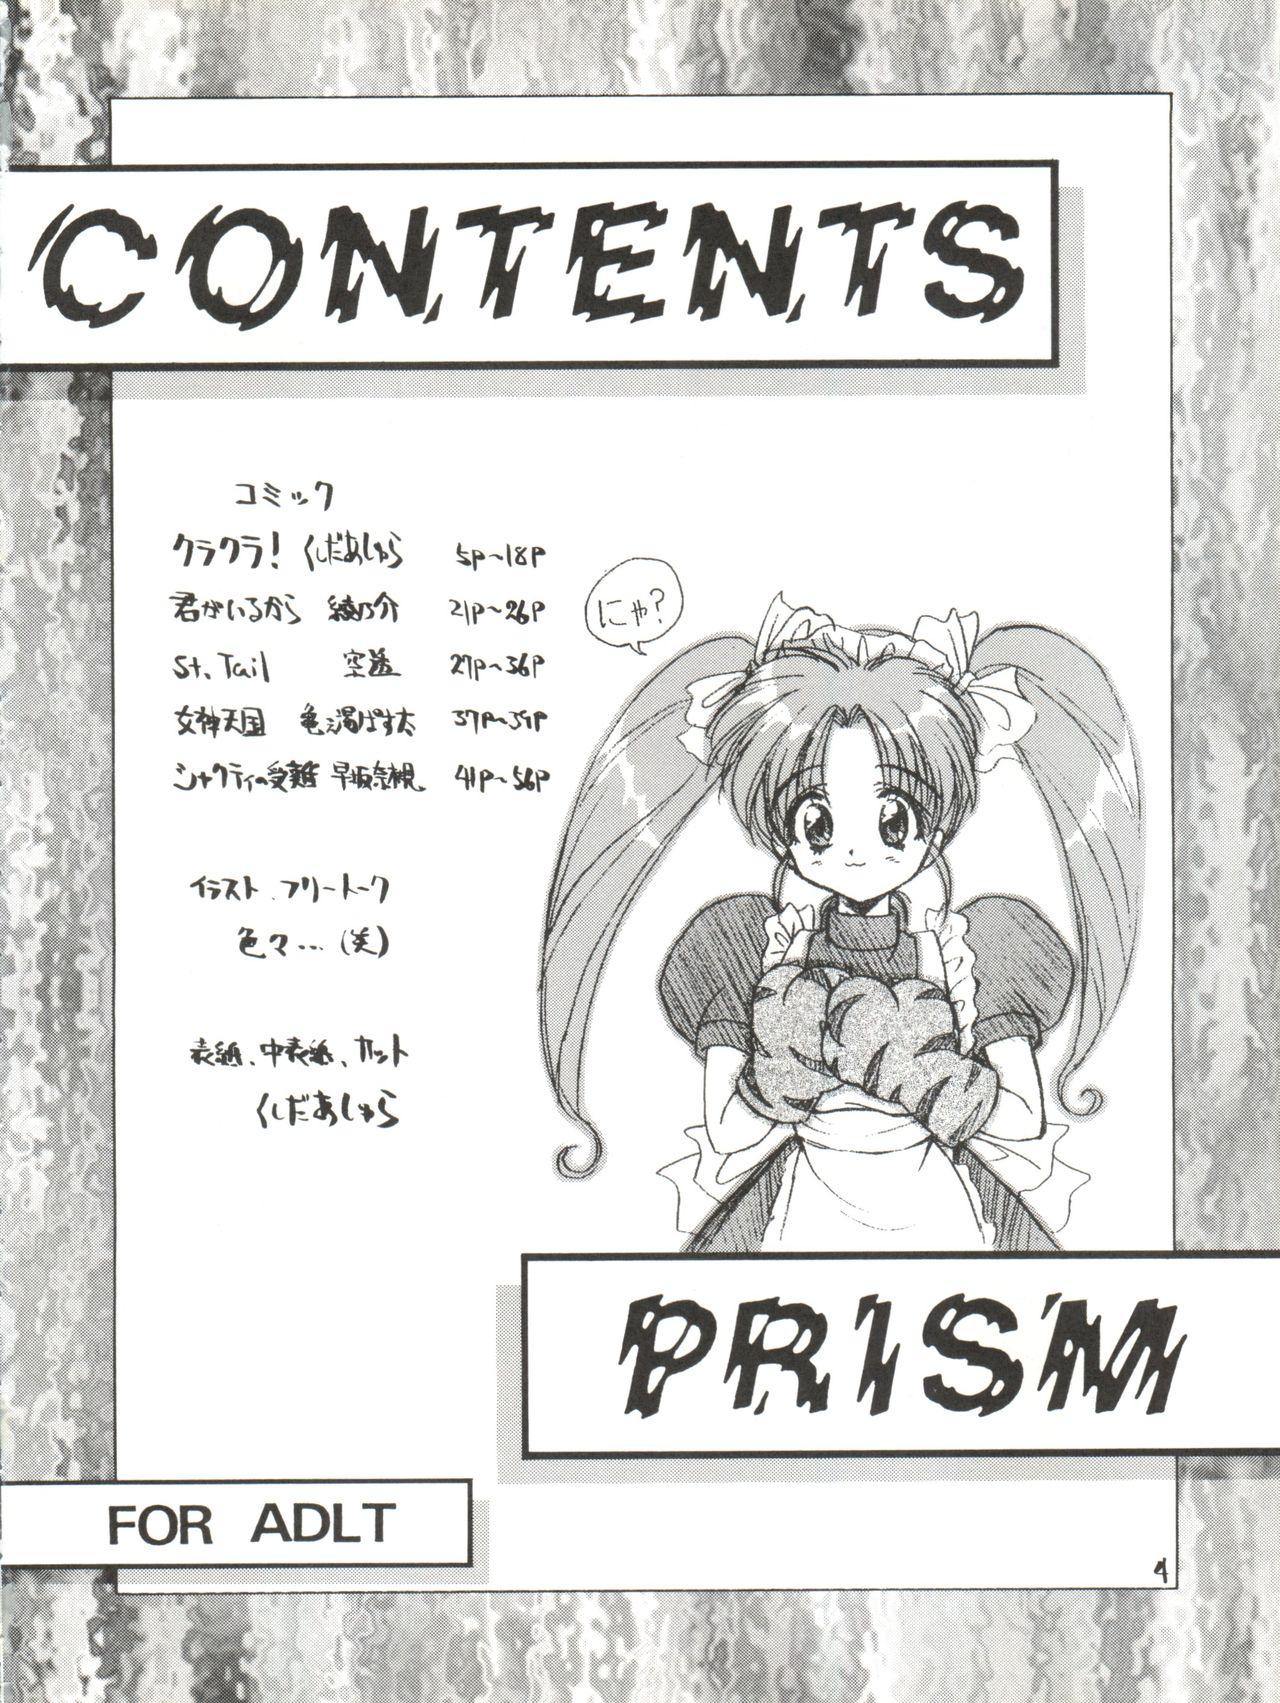 Stepsister PRISM - Tokimeki memorial Saint tail Wedding peach Victory gundam Megami paradise Cock Suck - Page 4